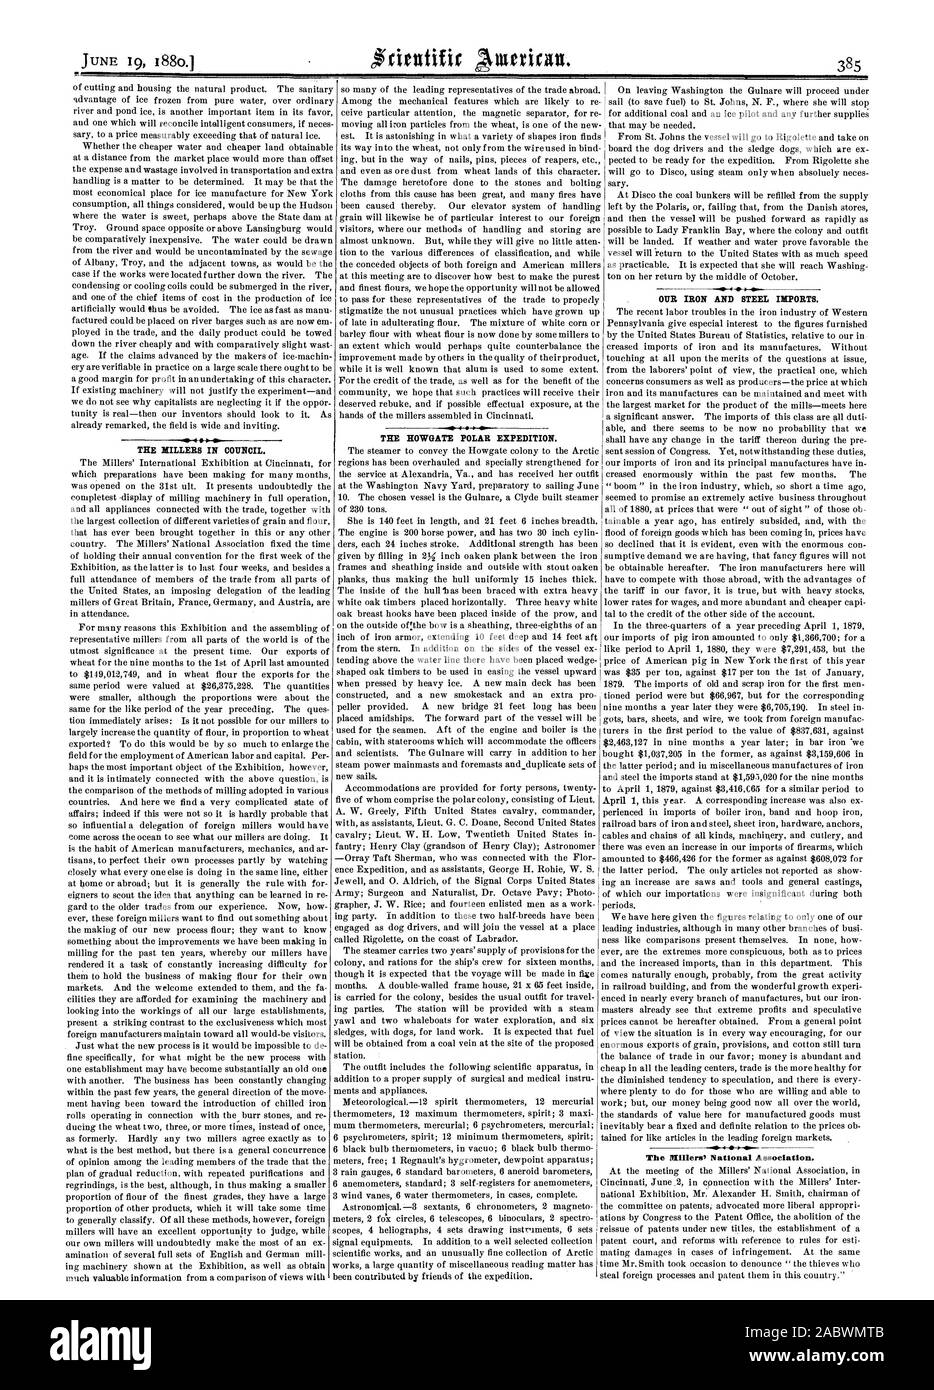 Die HOWGATE POLAR EXPEDITION. Die millers IM RAT. Unsere EISEN UND STAHL EINFUHREN., Scientific American, 1880-06-19 Stockfoto